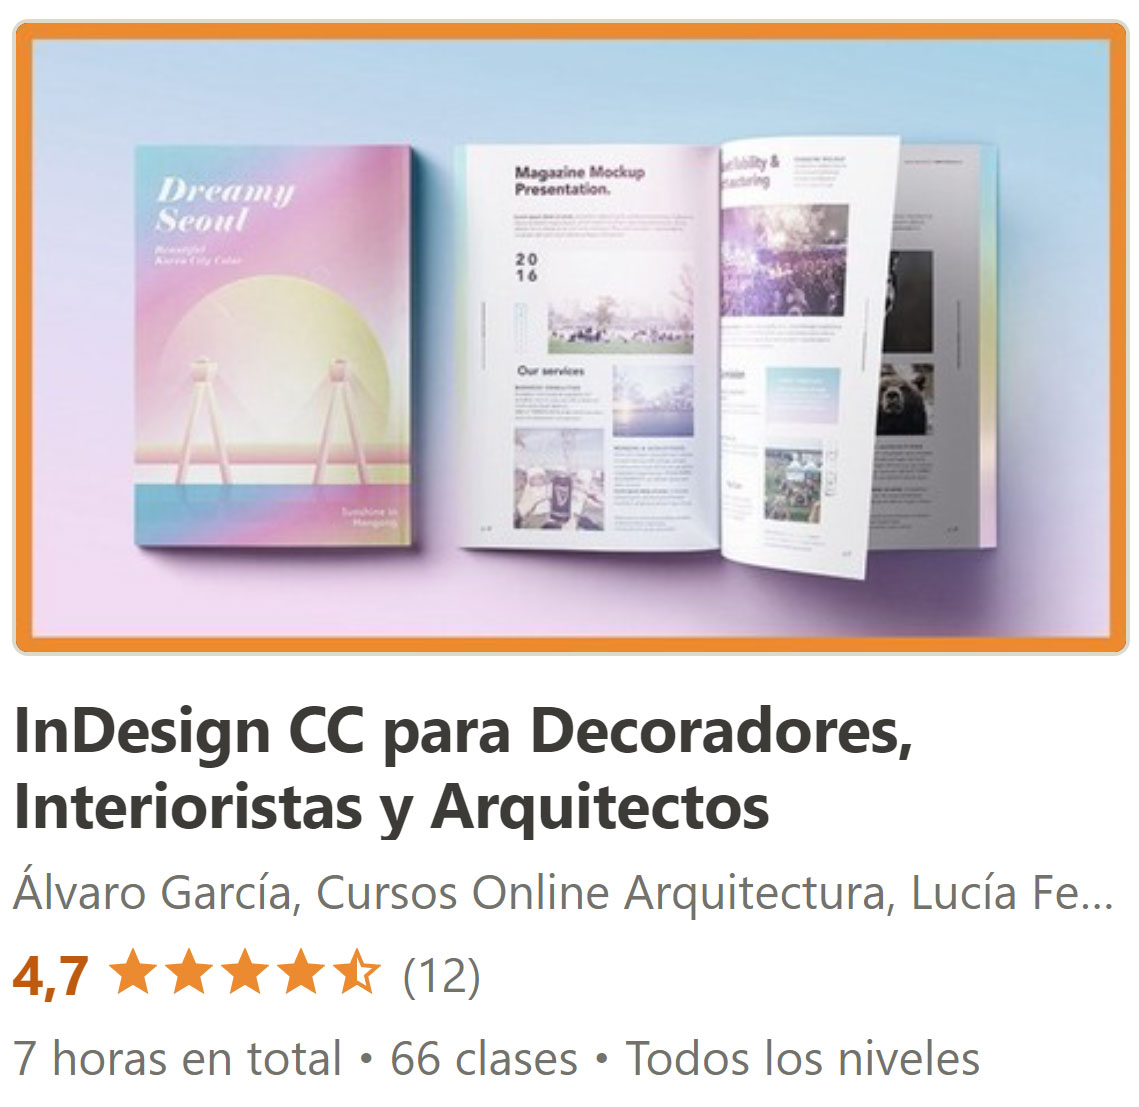 InDesign CC para Decoradores, Interioristas y Arquitectos